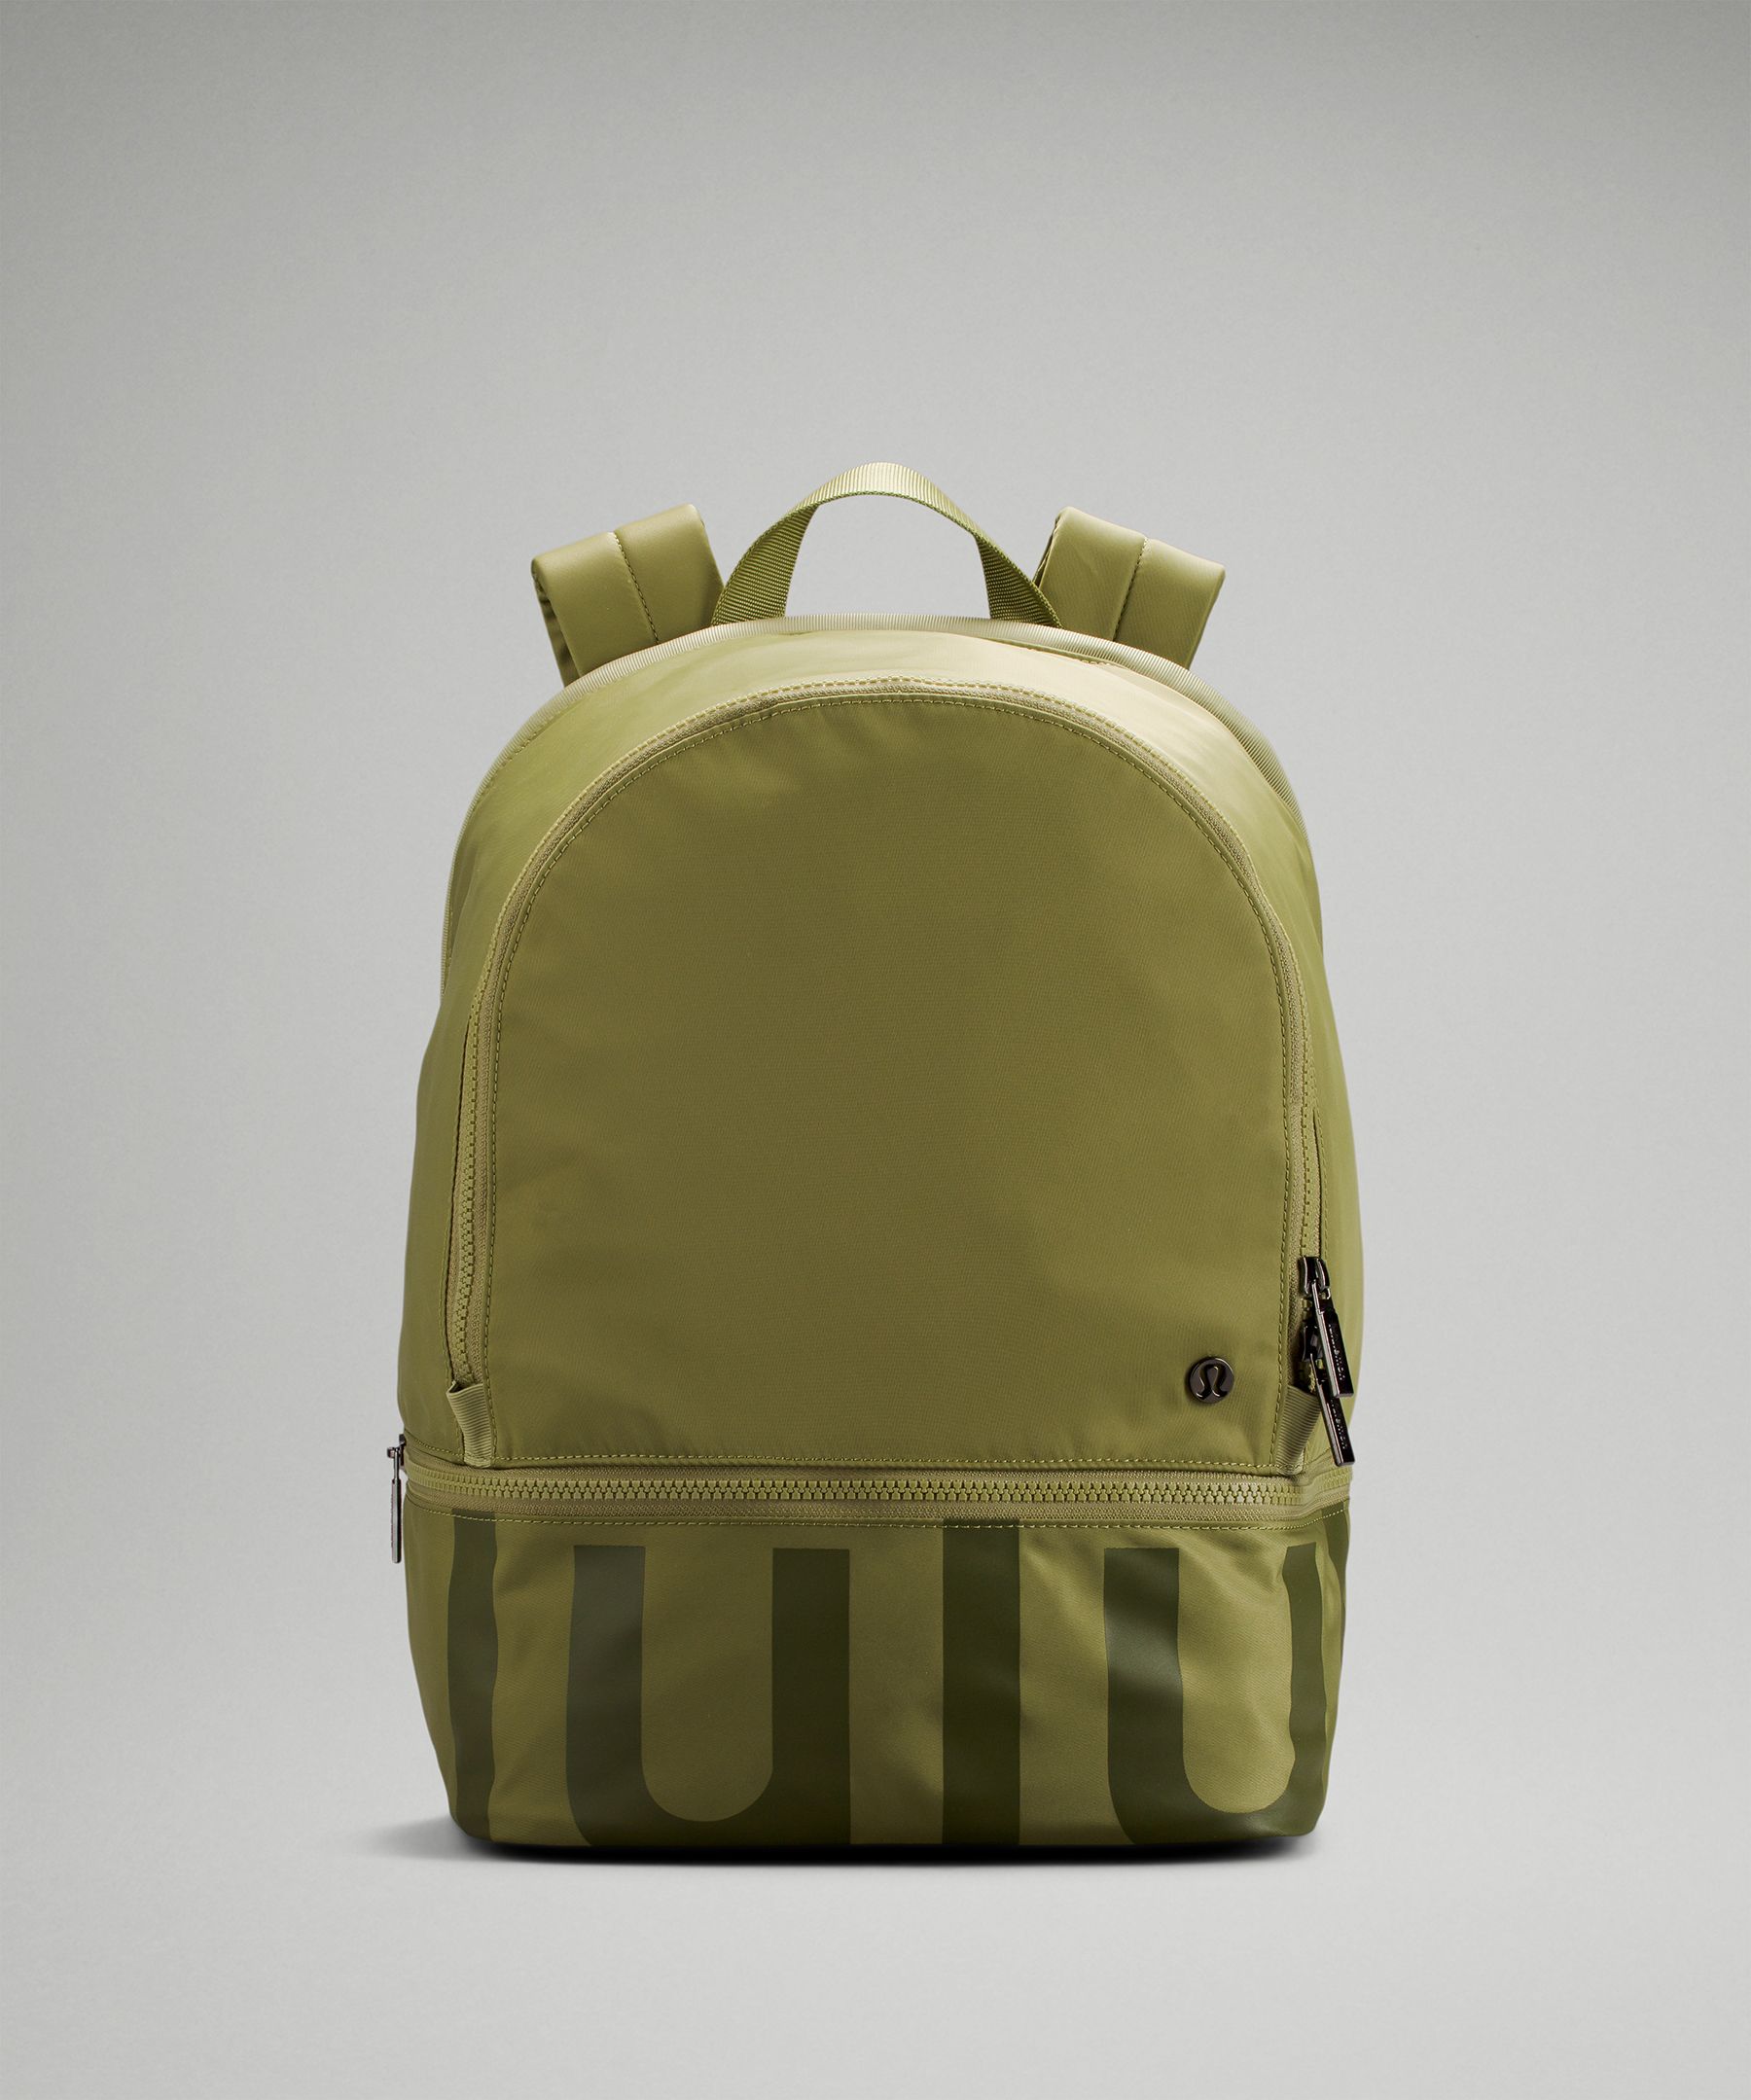 Lululemon City Adventurer Backpack 20l